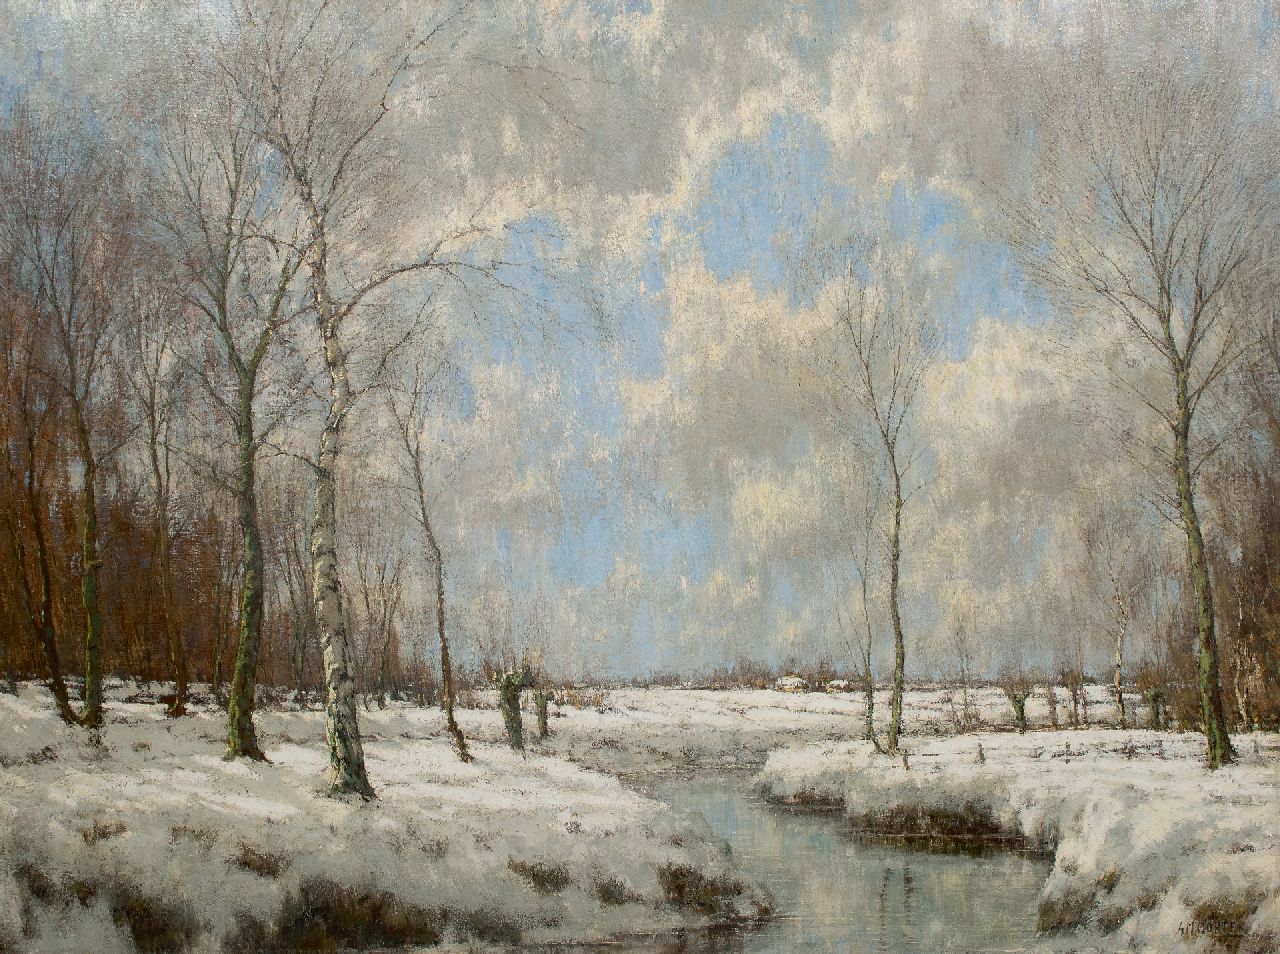 Gorter A.M.  | 'Arnold' Marc Gorter | Schilderijen te koop aangeboden | De Vordense Beek in de winter, olieverf op doek 114,9 x 154,7 cm, gesigneerd rechtsonder (tweemaal)